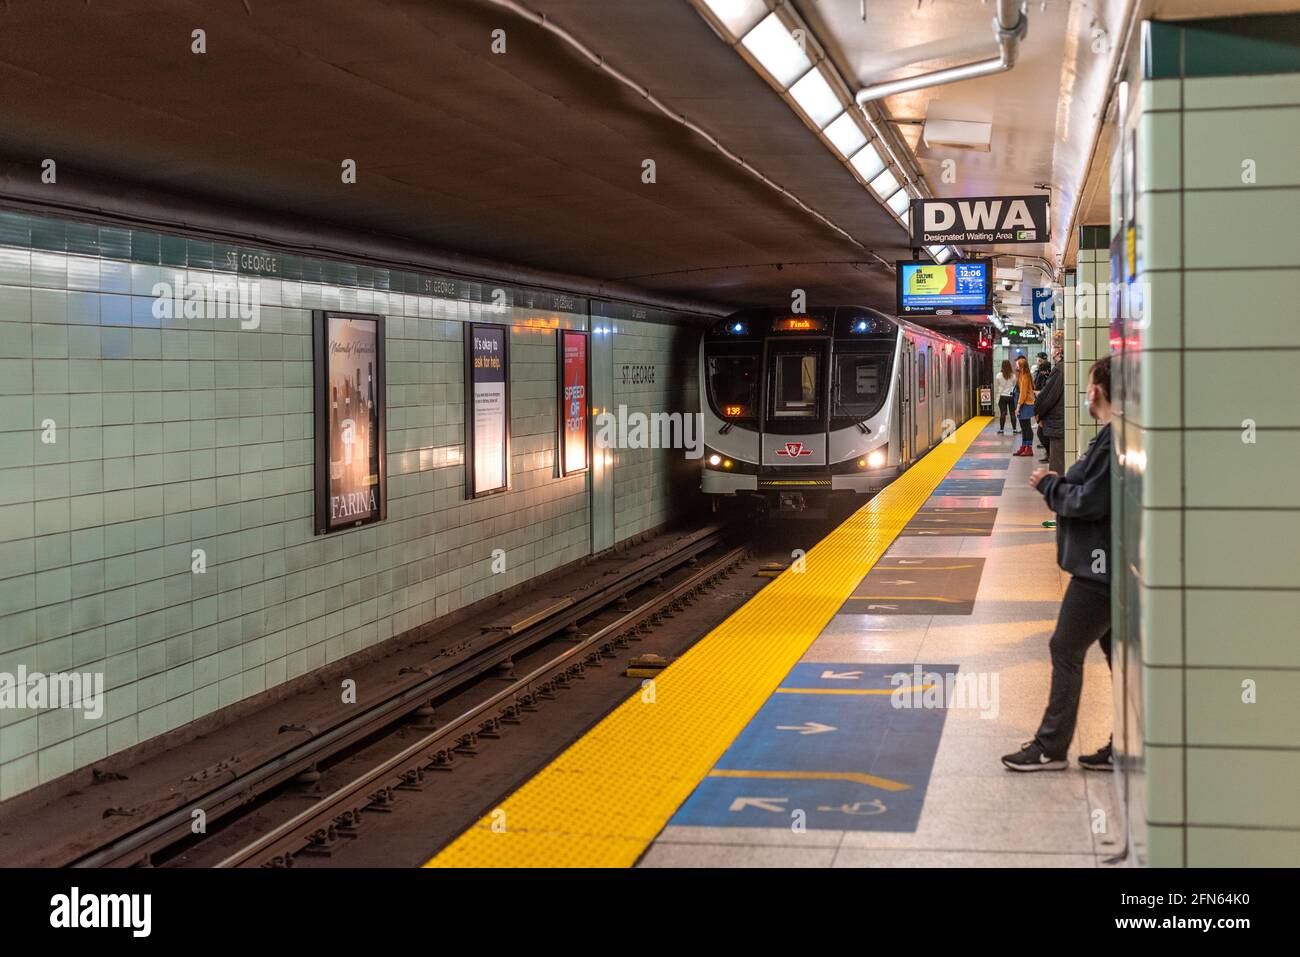 Echte Leute, die während der Coronavirus- oder Covid-19-Zeit auf einen TTC-U-Bahn-Zug in einem Bahnhof warten. TTC steht für Toronto Transit Commission in Kanada Stockfoto